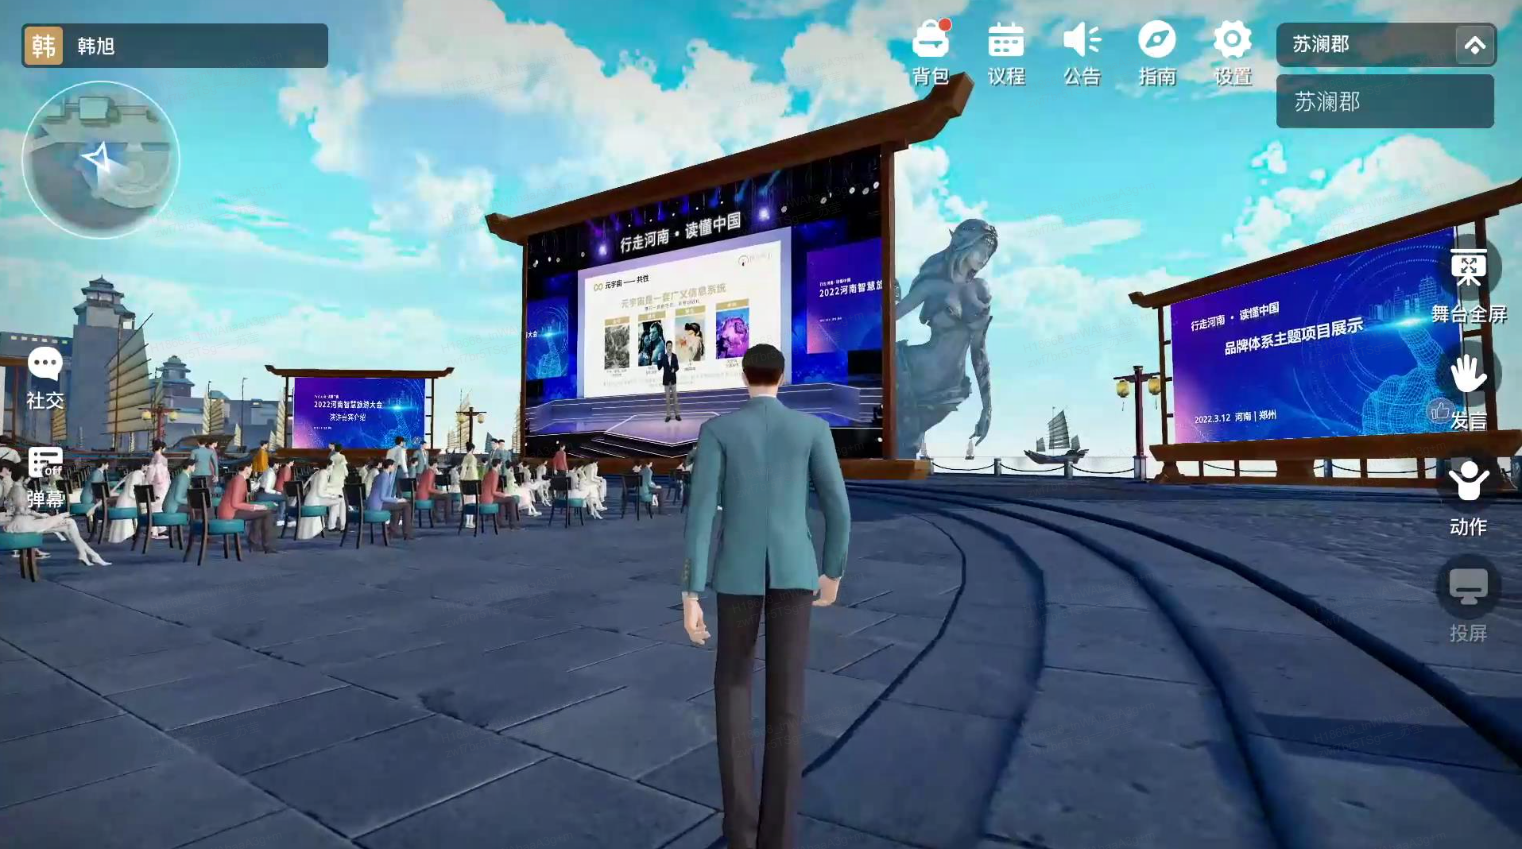 这是一张游戏内截图，显示一个角色站在广场上，背对镜头，前方有舞台、屏幕和坐着的观众，环境设计现代且有未来感。